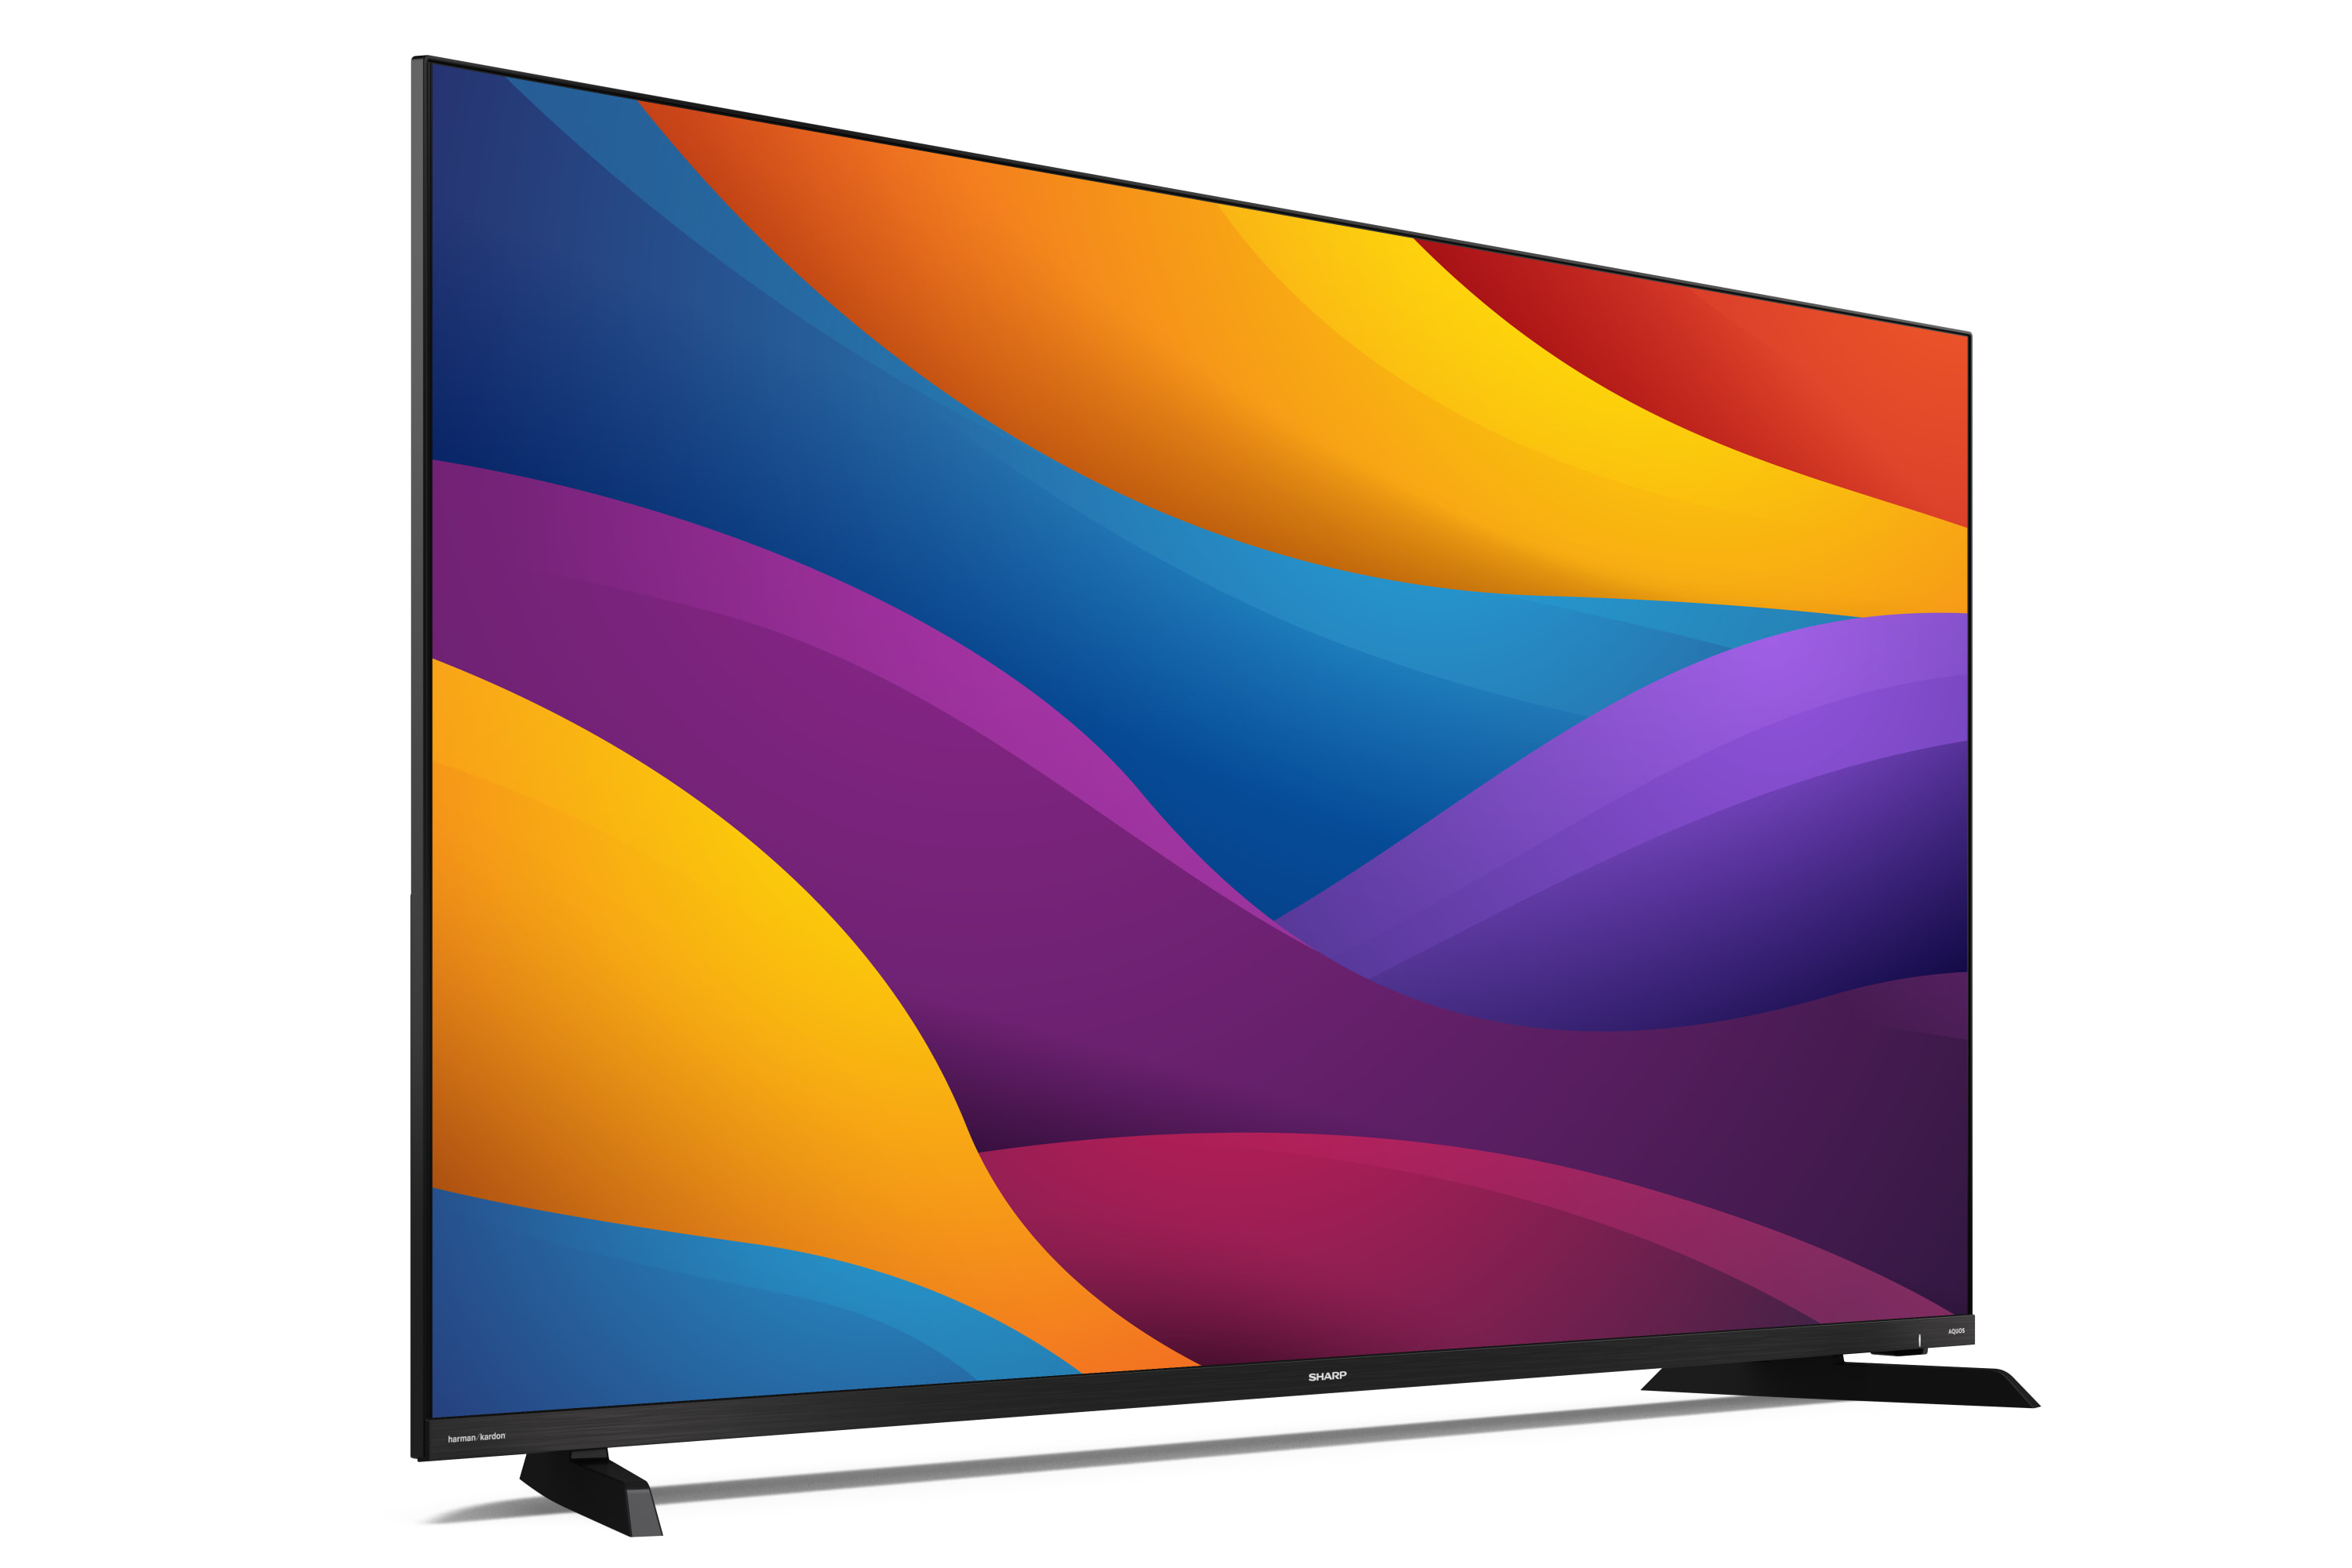 Smart TV 4K UHD - 4K ULTRA HD de 50 pol.